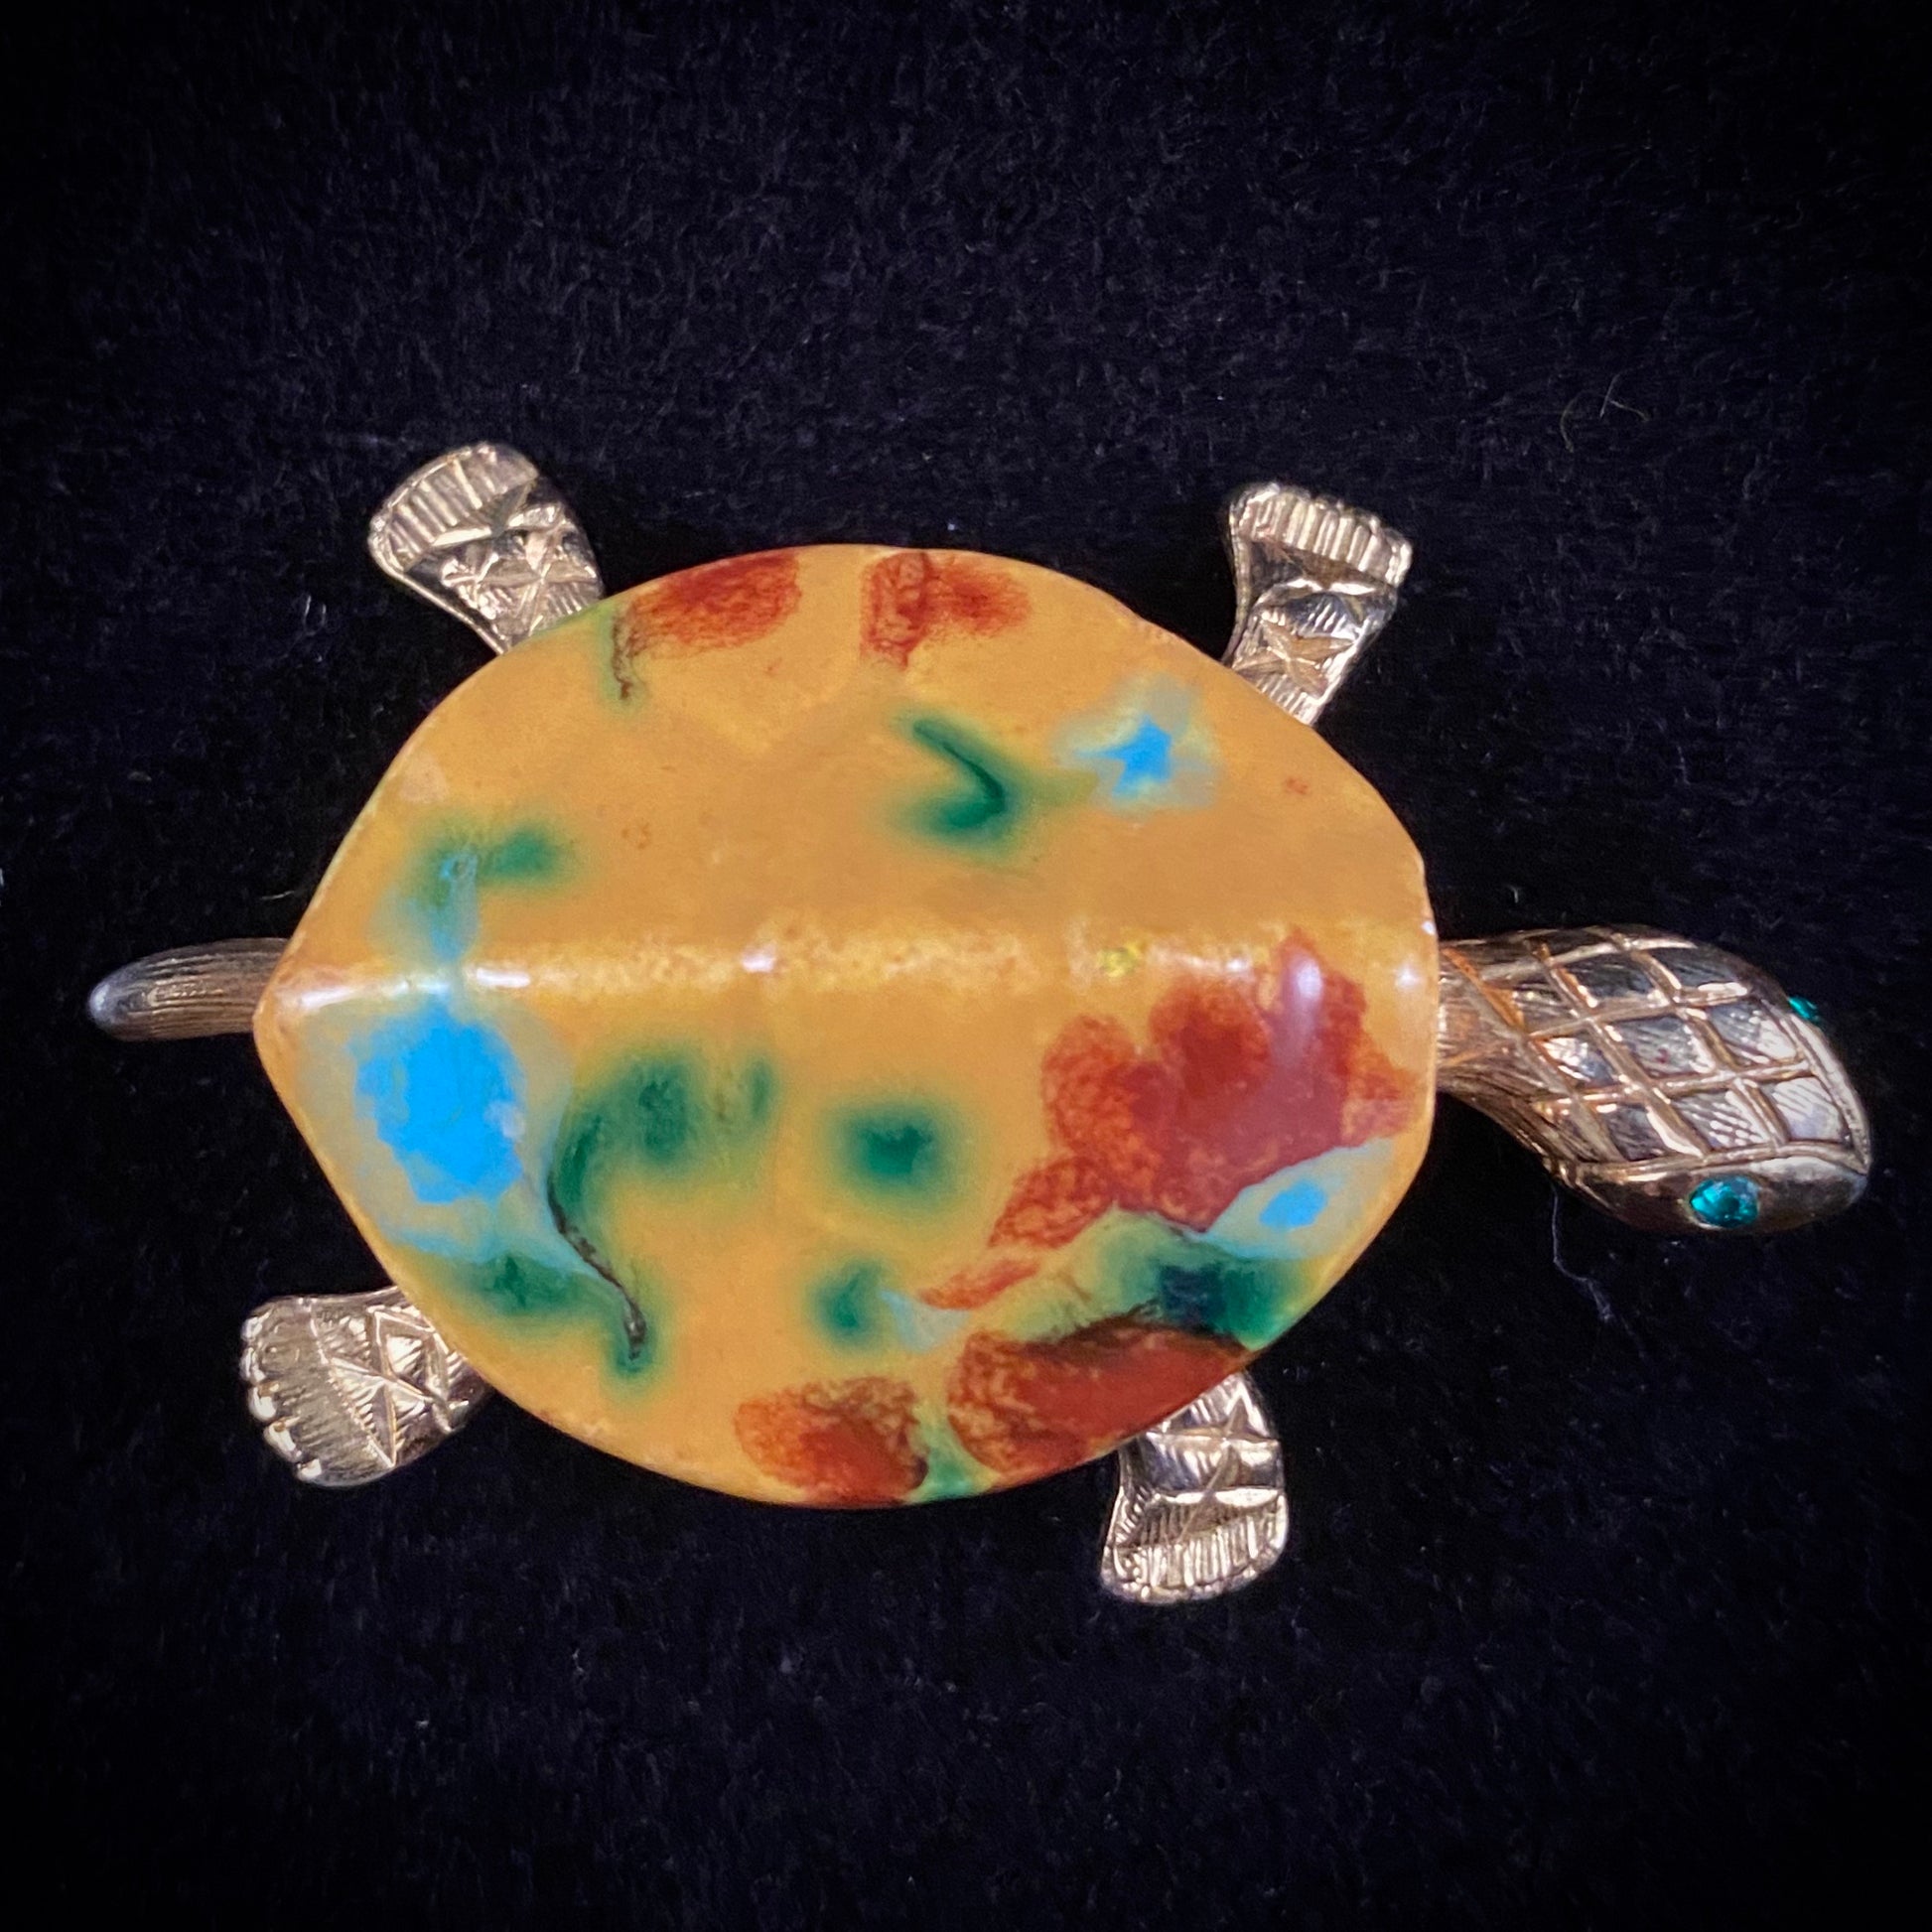 Late 60s/ Early 70s JJ (Jonette Jewelry) Turtle Brooch - Retro Kandy Vintage